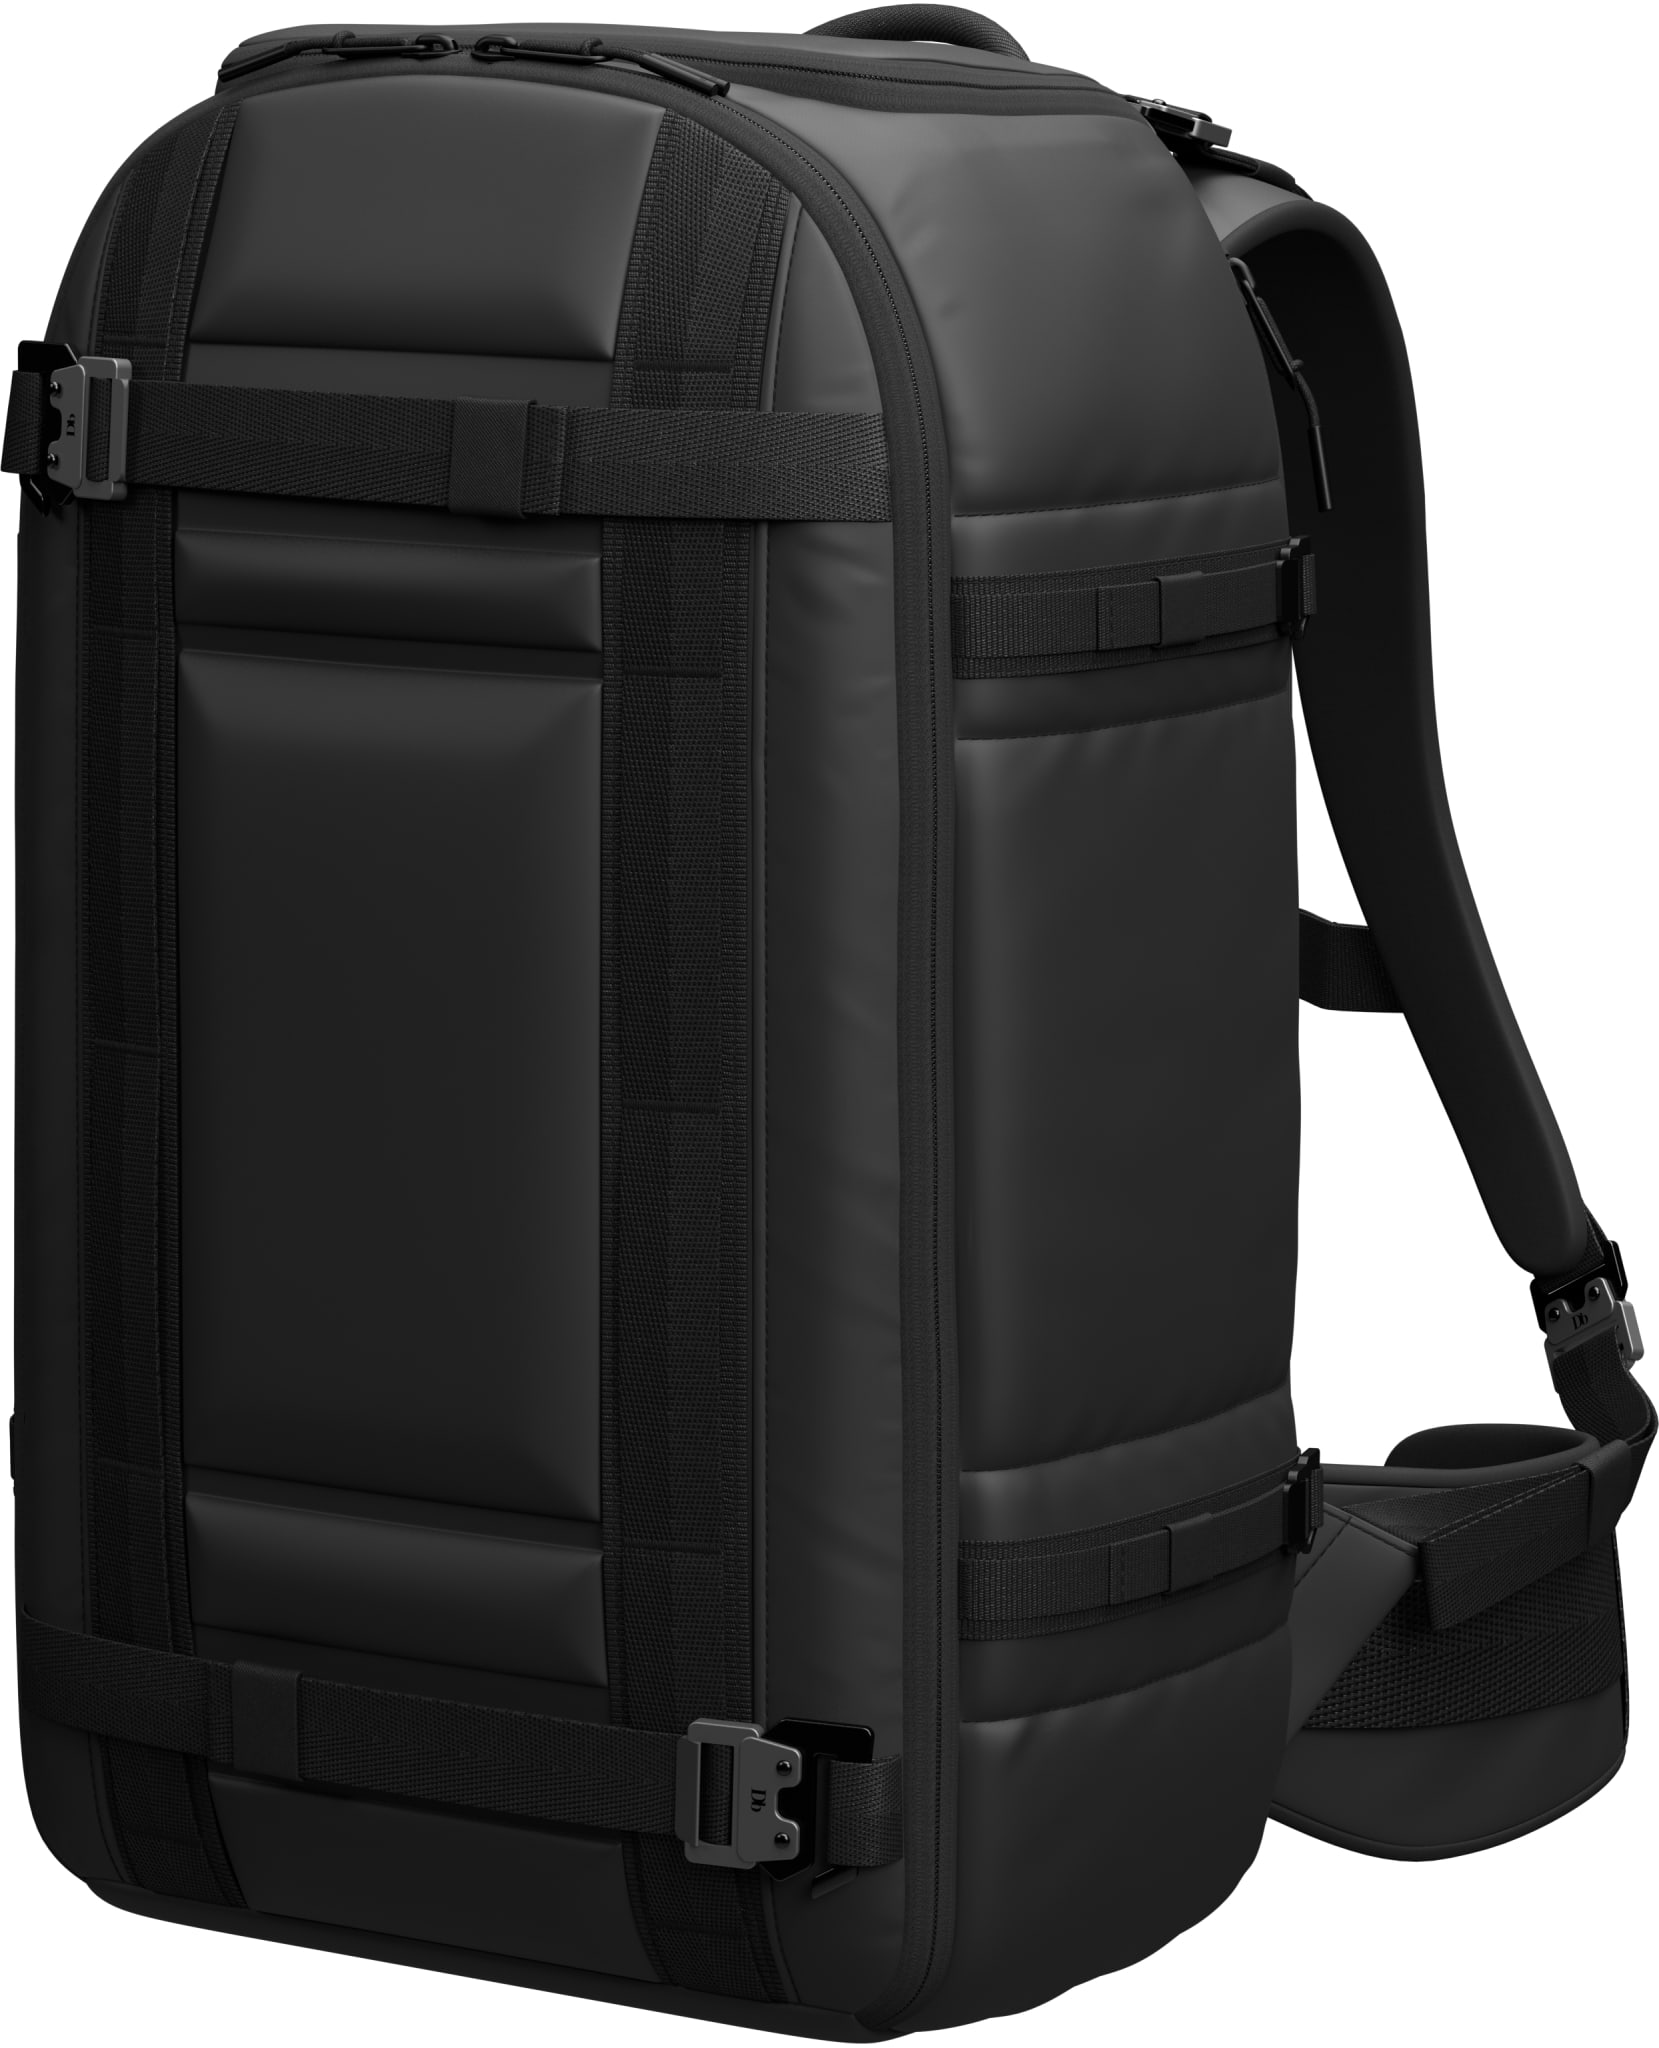 The Ramverk 32L Pro Backpack